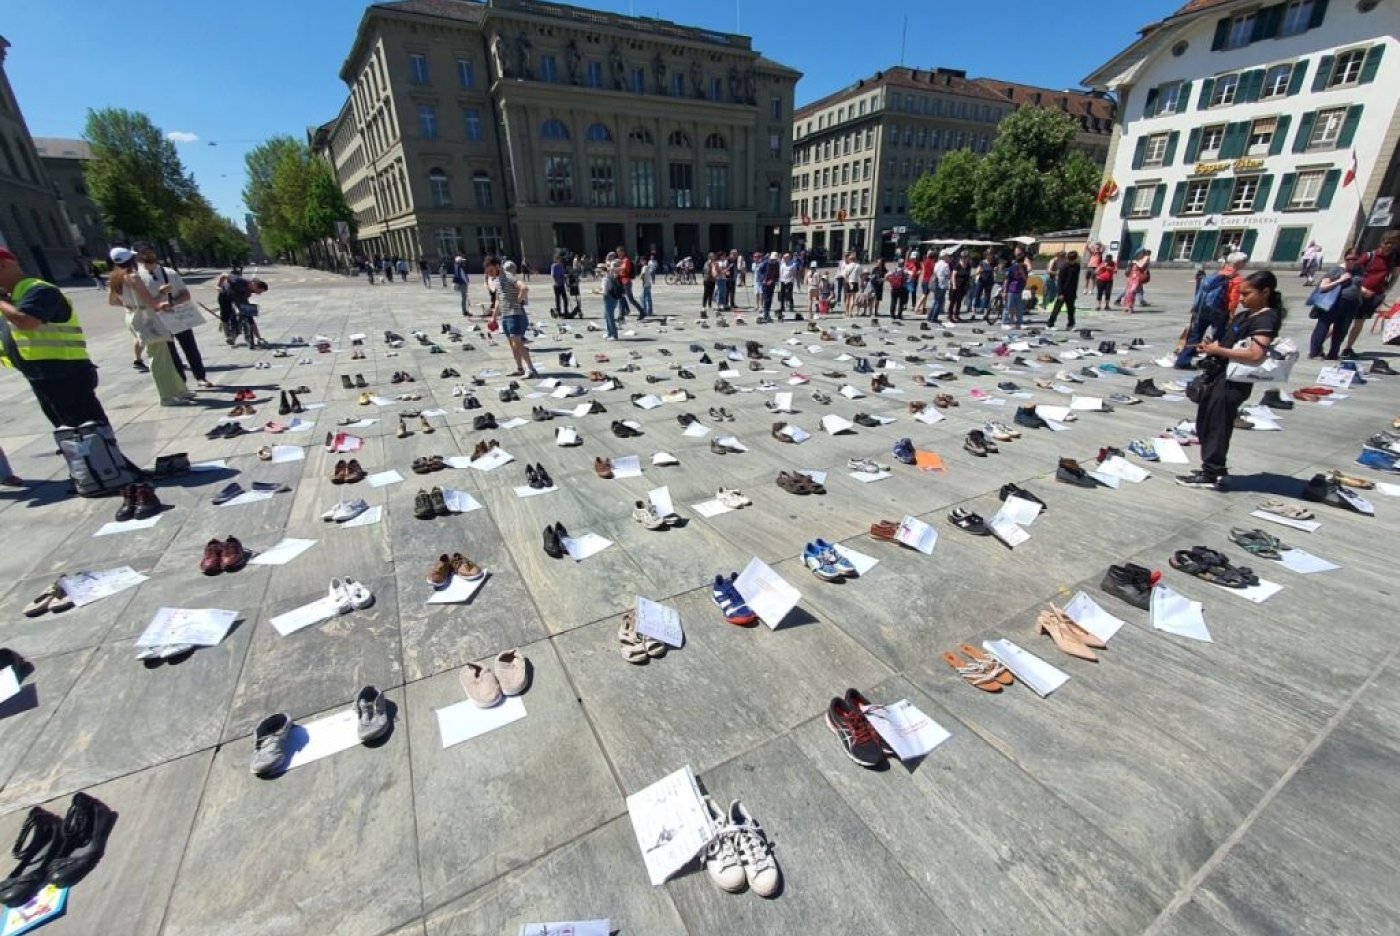 Les manifestants ont disposé 300 paires de chaussures sur la Place fédérale pour les malades non présents. Patientenorganisation ME/CFS Schweiz